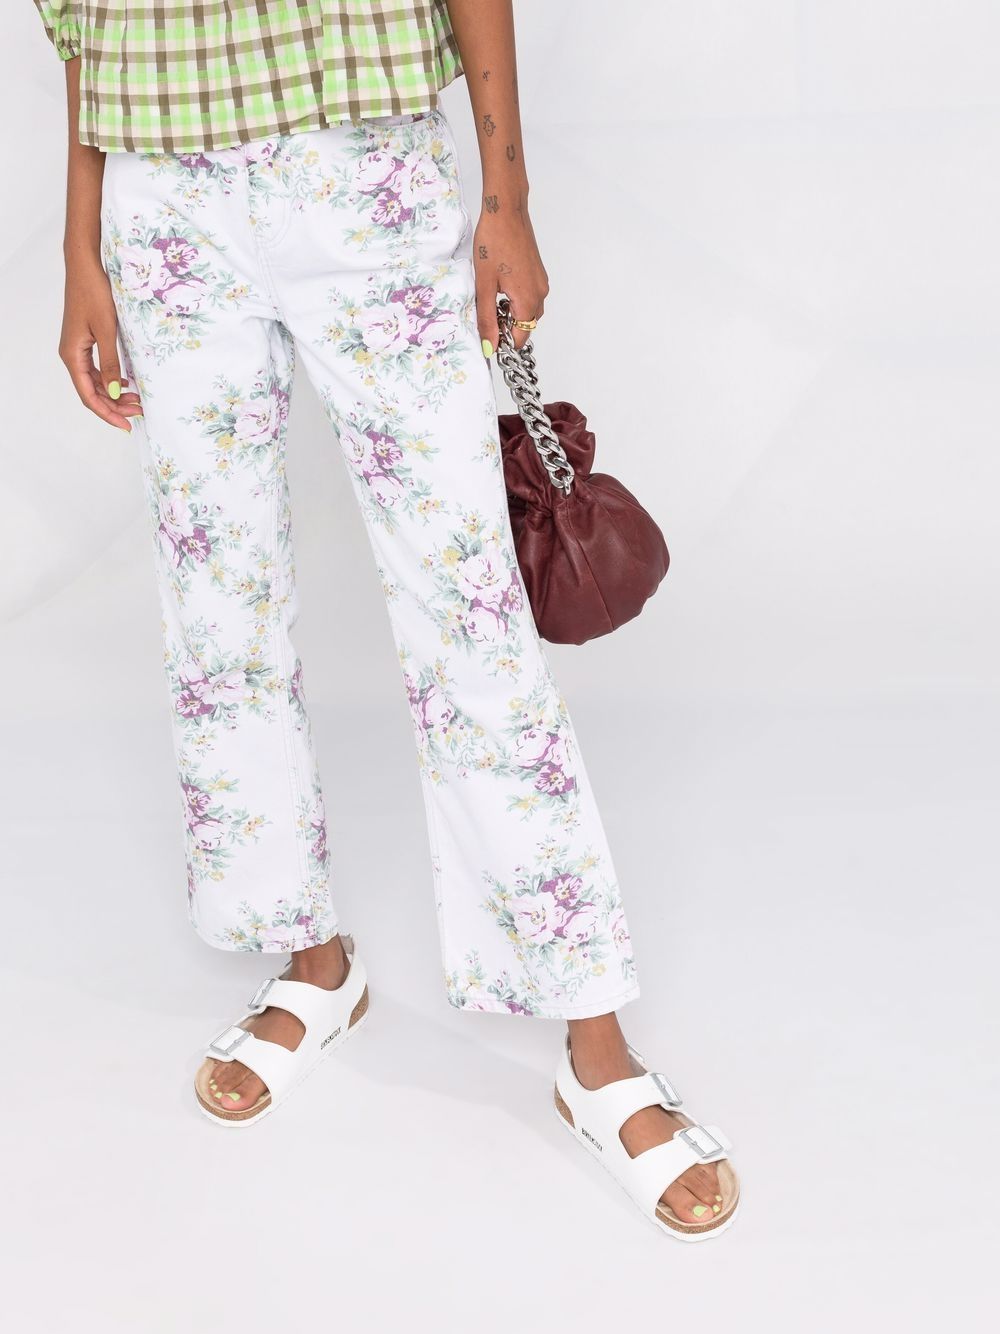 фото Ganni расклешенные джинсы betzy с цветочным принтом